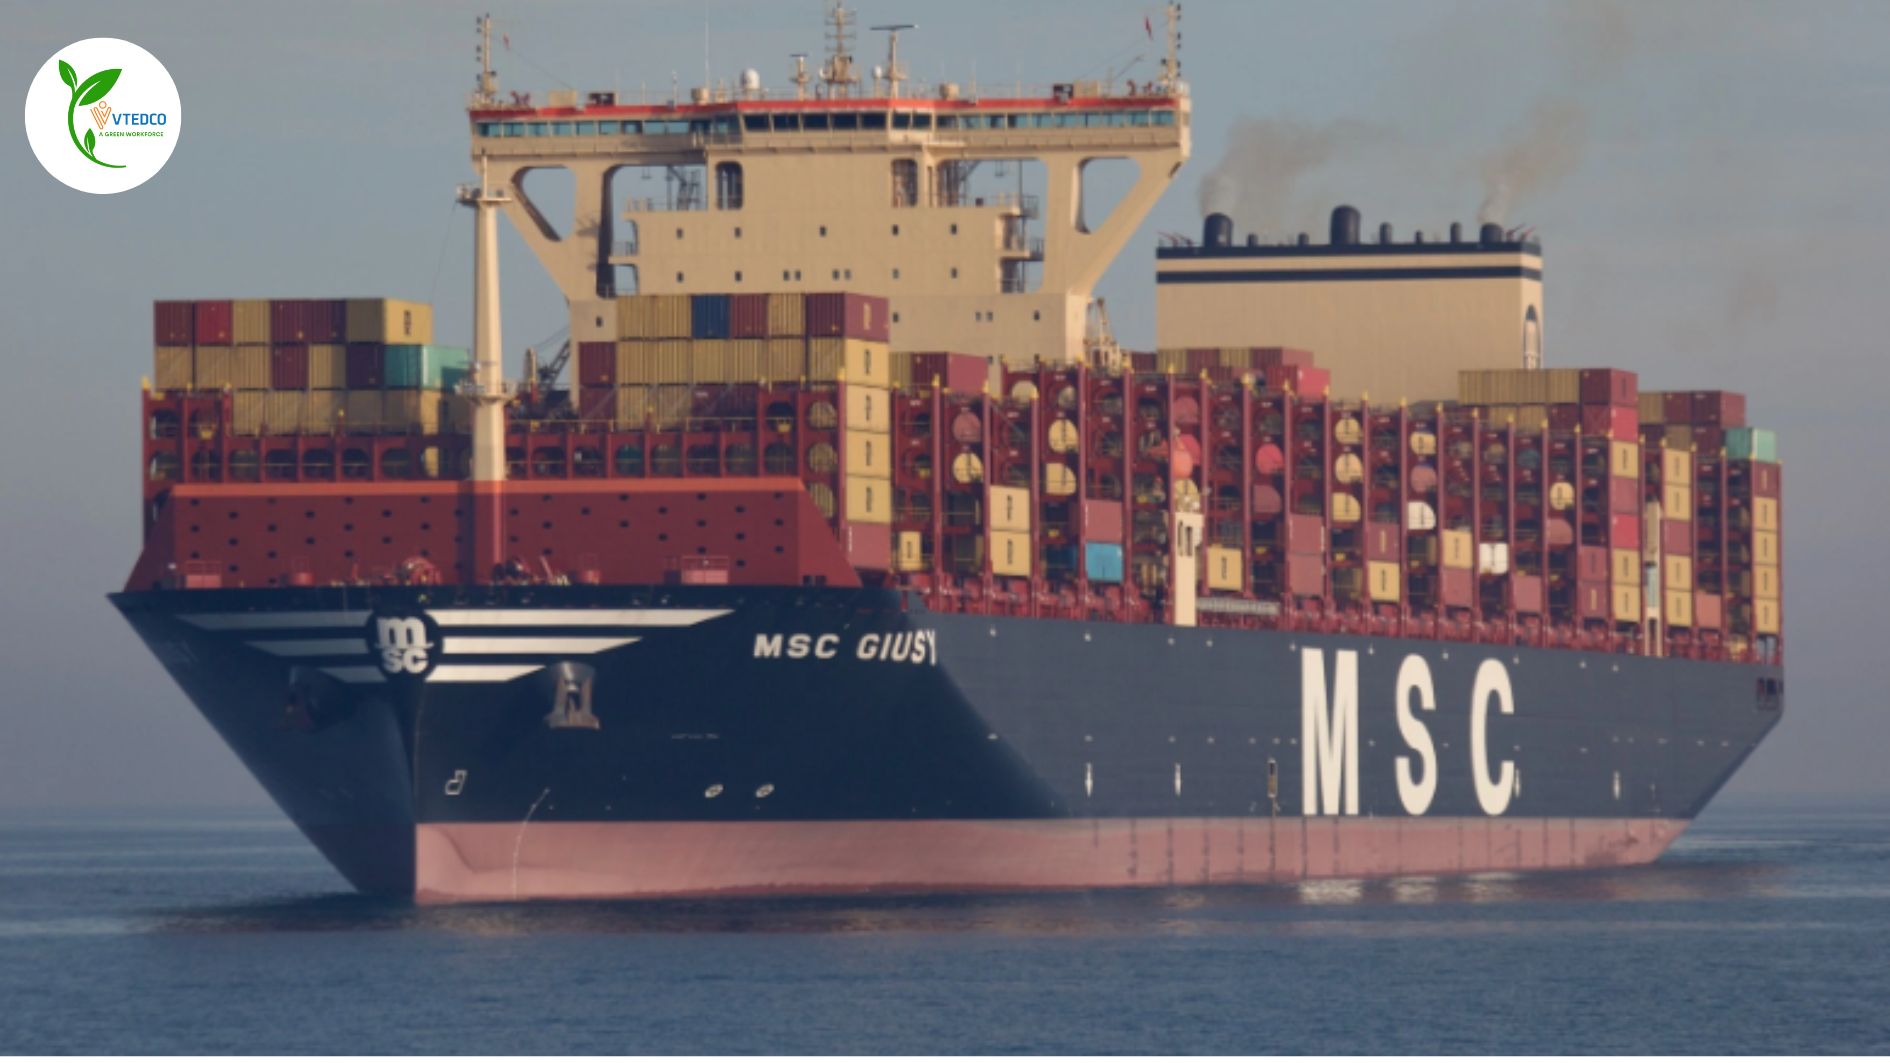 Cục Hàng hải ủng hộ cảng SSIT đón siêu tàu dài gần 400m